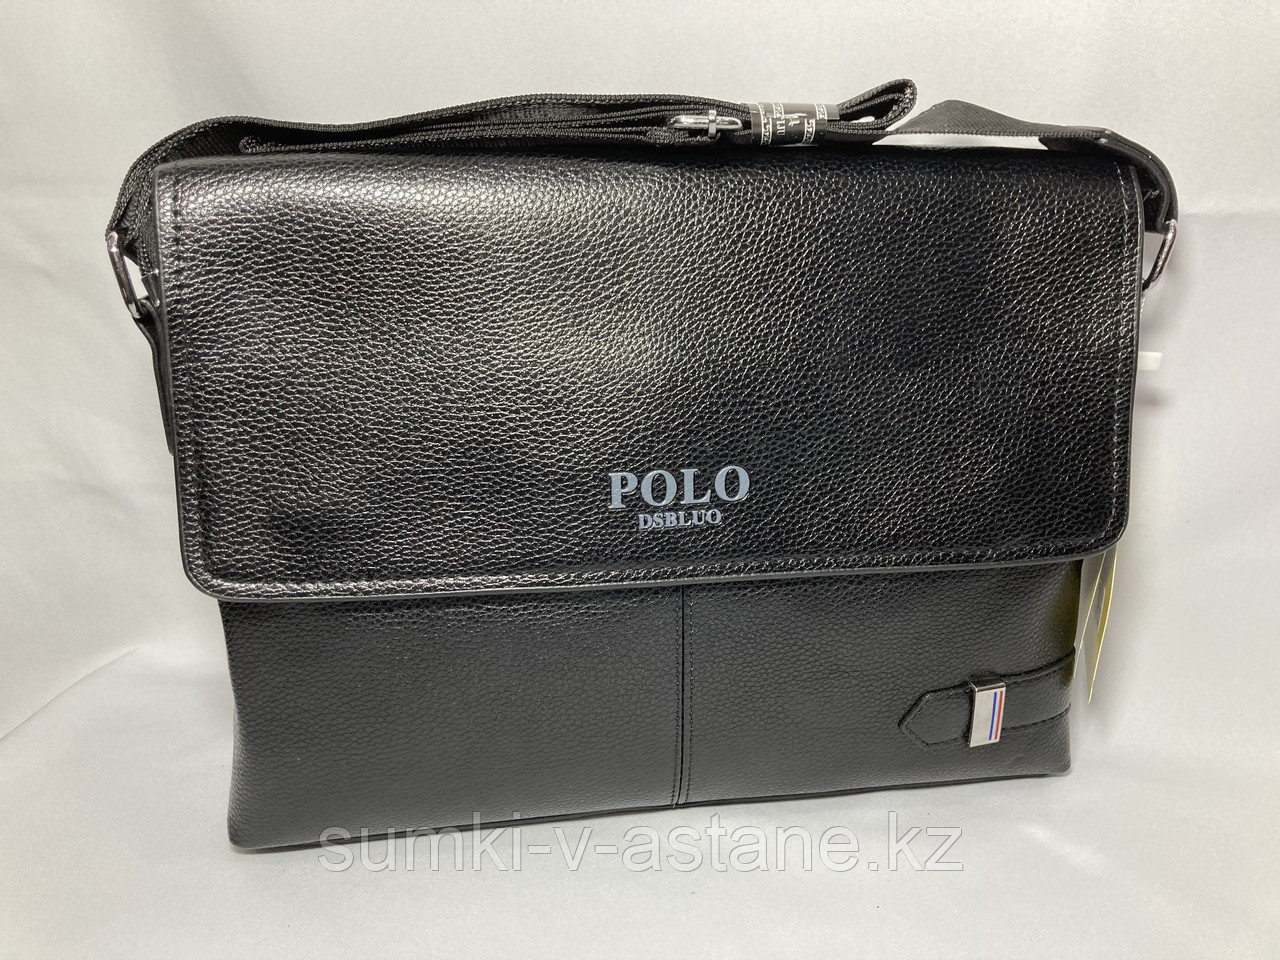 Мужская сумка-мессенджер через плечо "POLO" (высота 24 см, ширина 34 см, глубина 6 см)